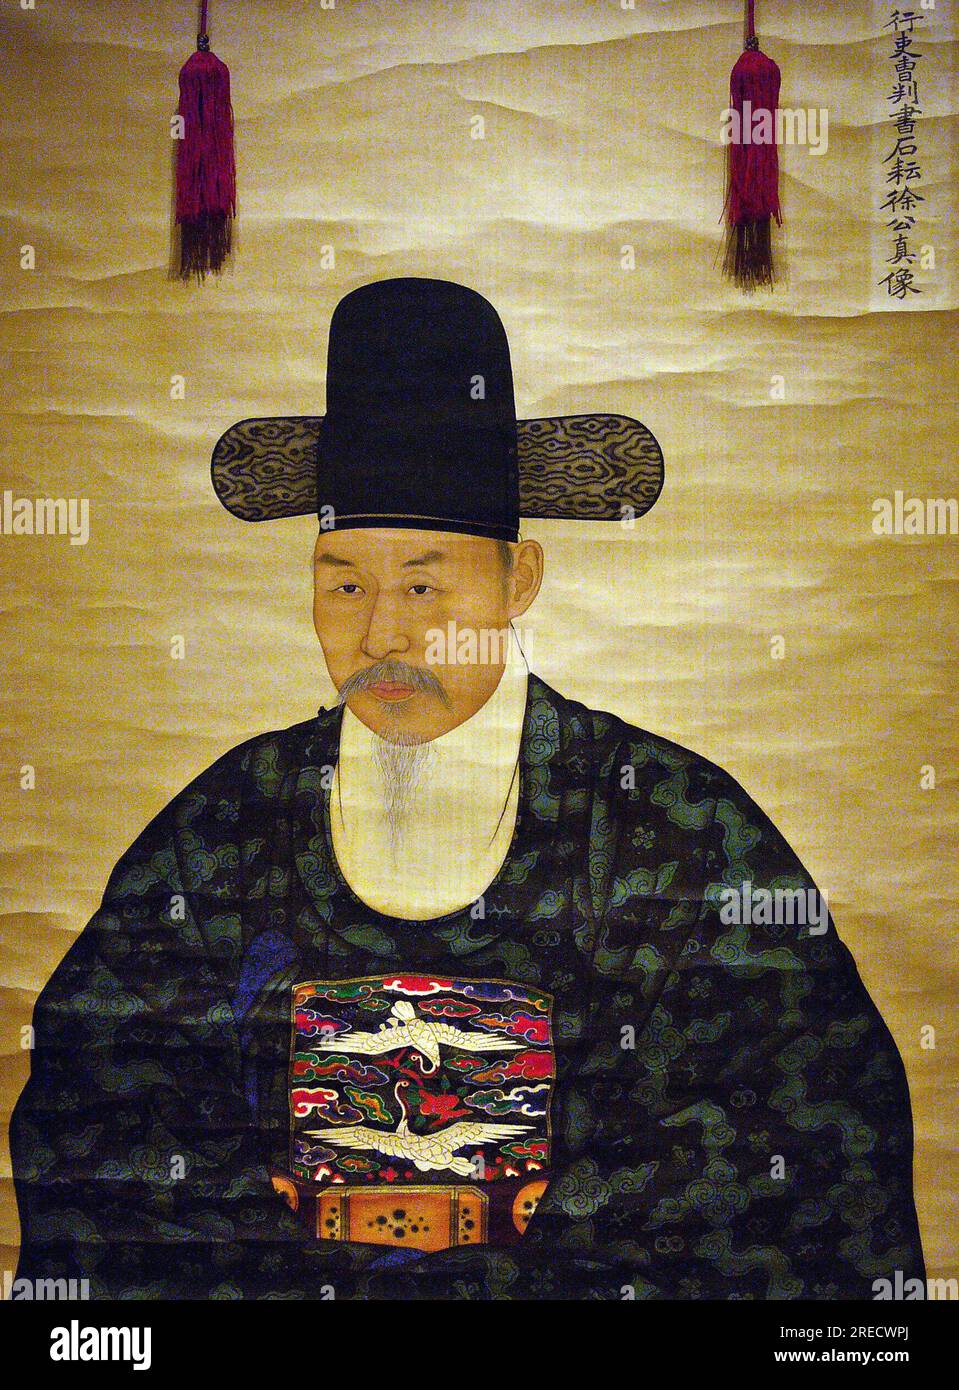 Portrait de Seo Heonsun (ou "Chijang"), (1801-1868) ministre, peinture sur soie sur panneau, anonyme, XIXe siecle sous la periode Joseon, Coree. Photographie, Musee National de Seoul, Republique de Coree, 2006. Stock Photo